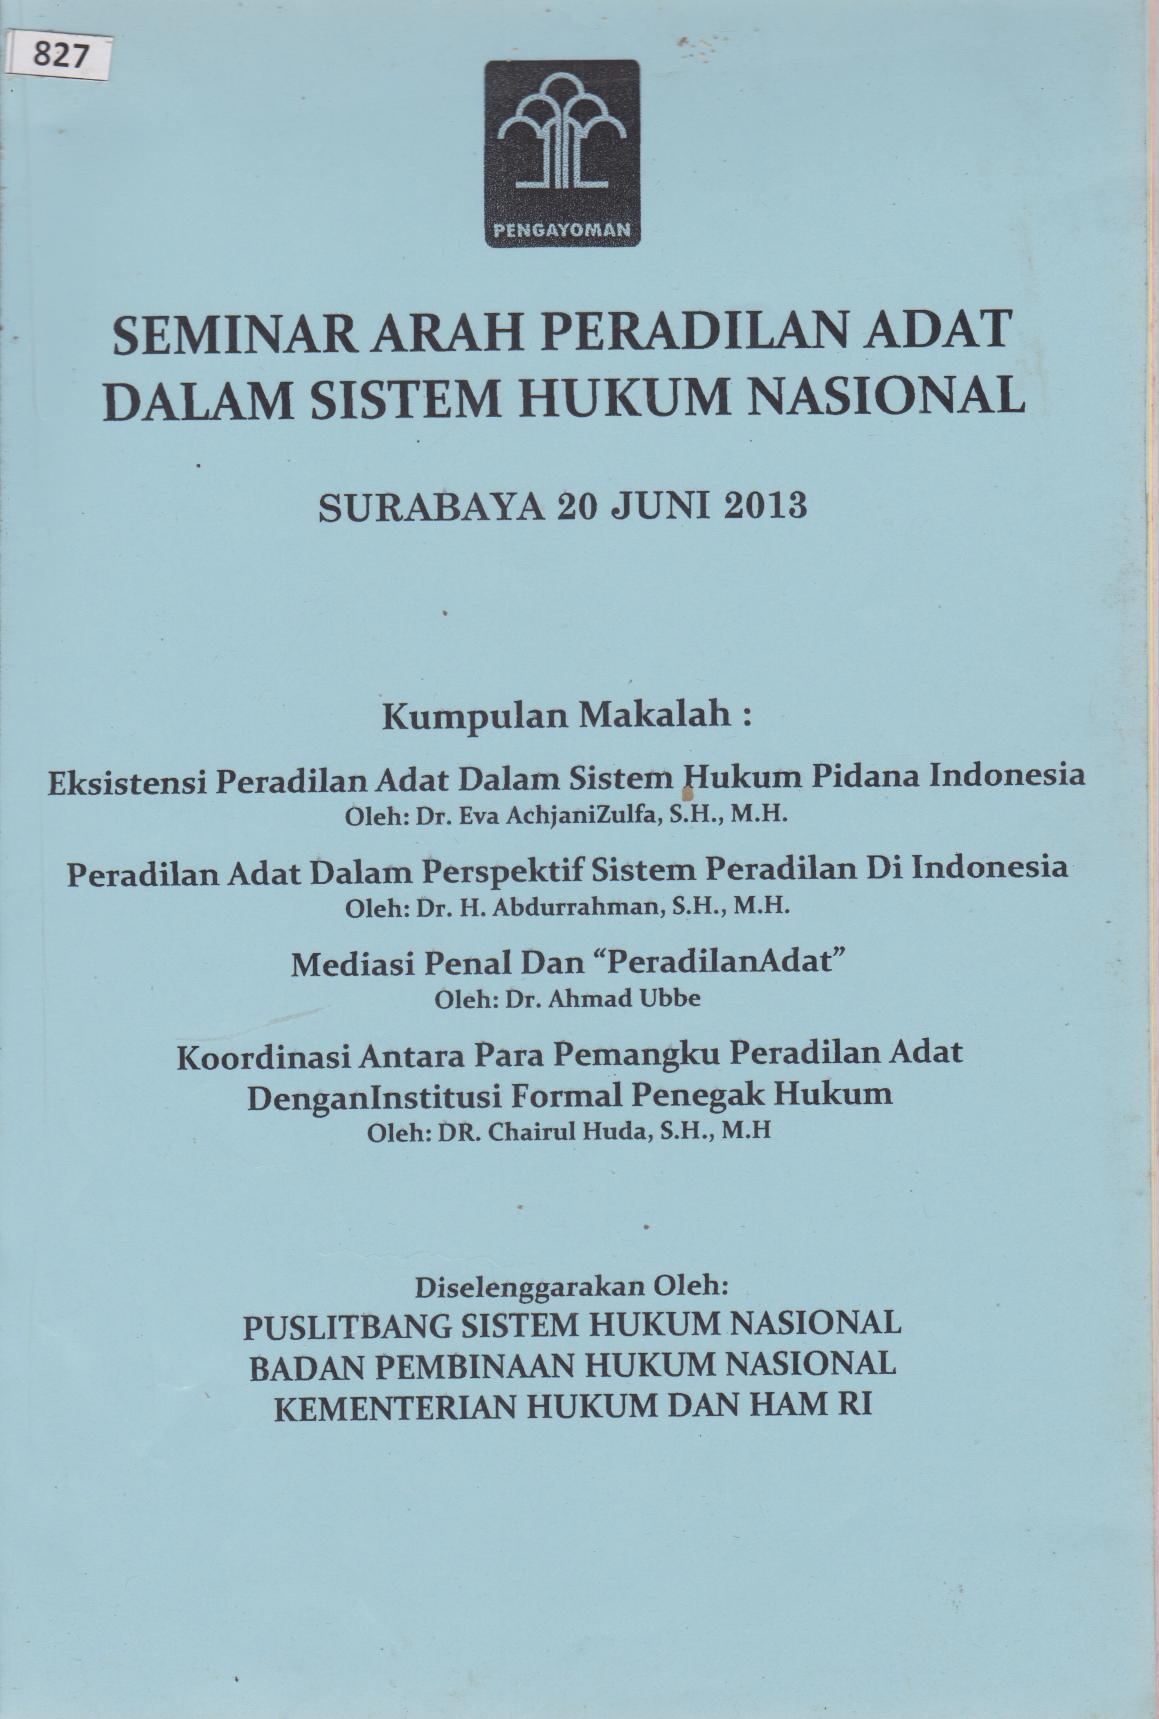 Seminar Arah Peradilan Adat Dalam Sistem Hukum Nasional